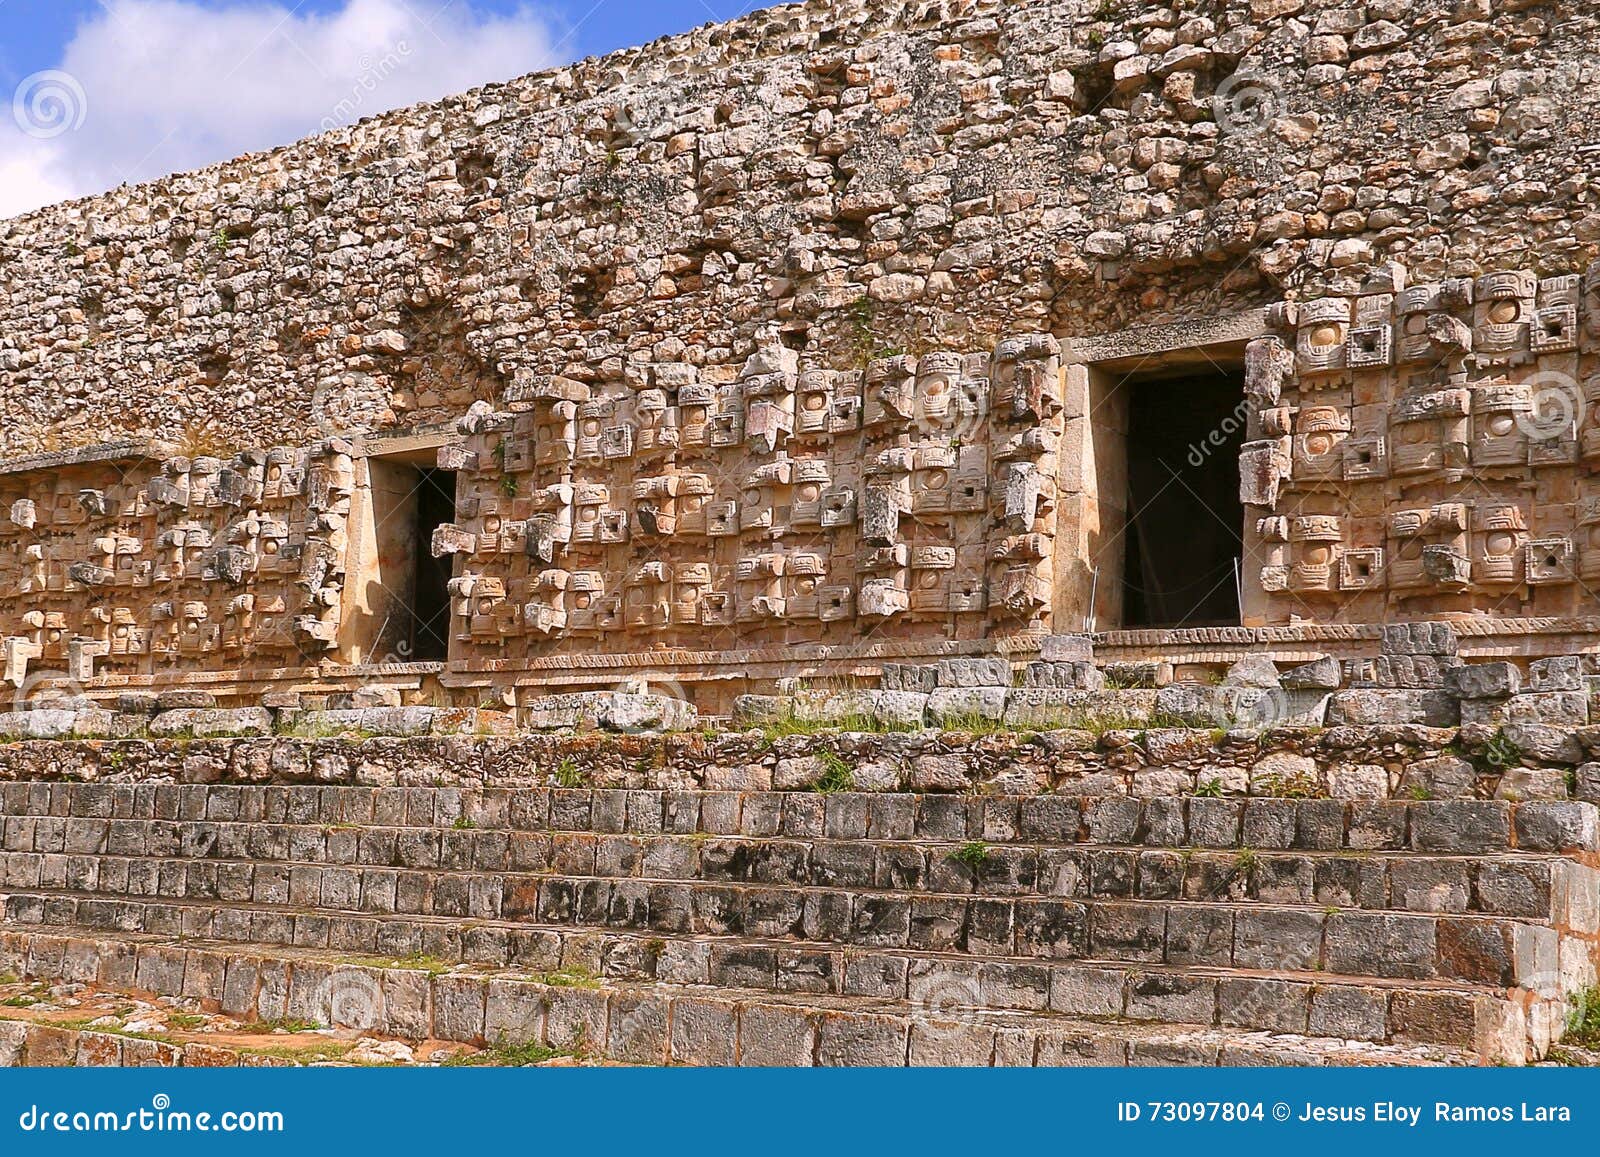 mayan pyramids of kabah in yucatan, mexico. iii